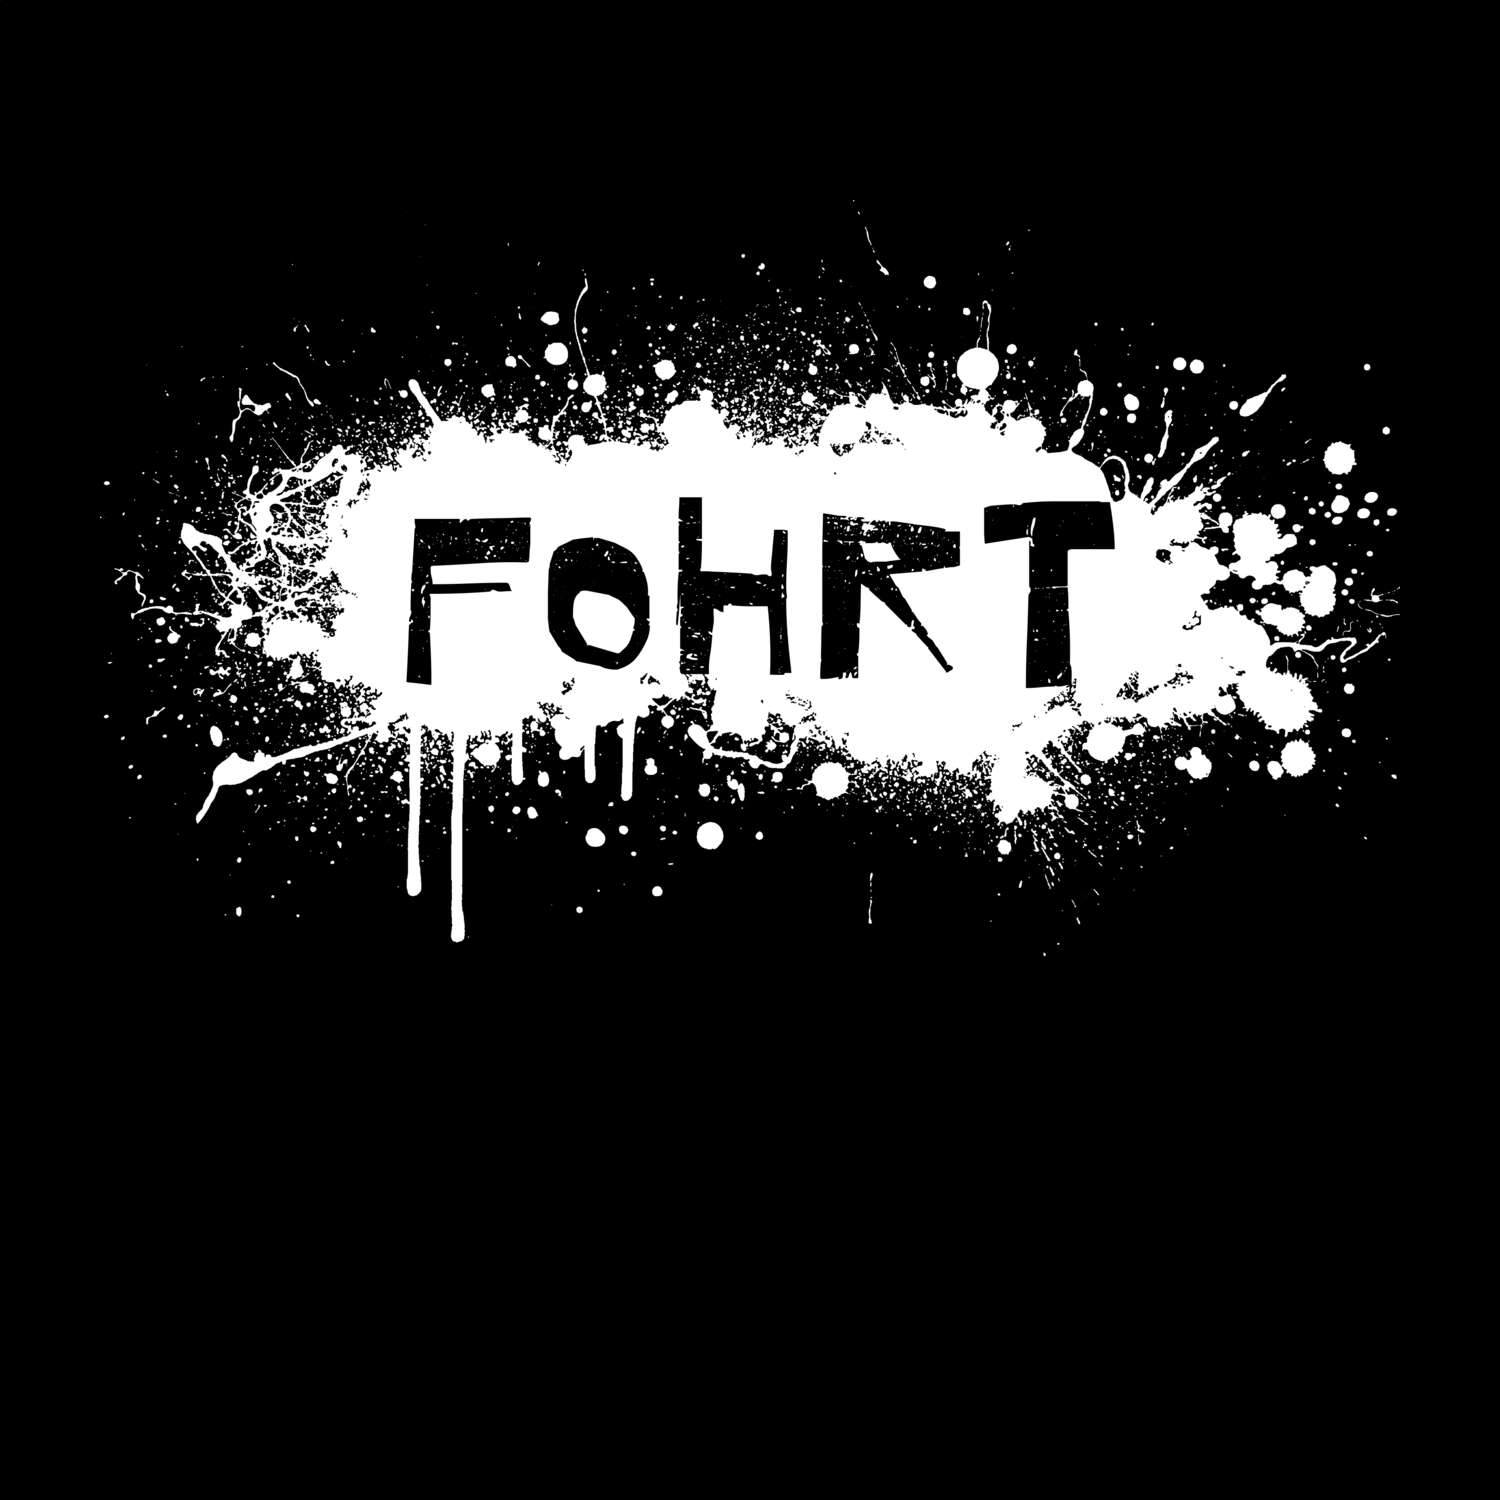 Fohrt T-Shirt »Paint Splash Punk«